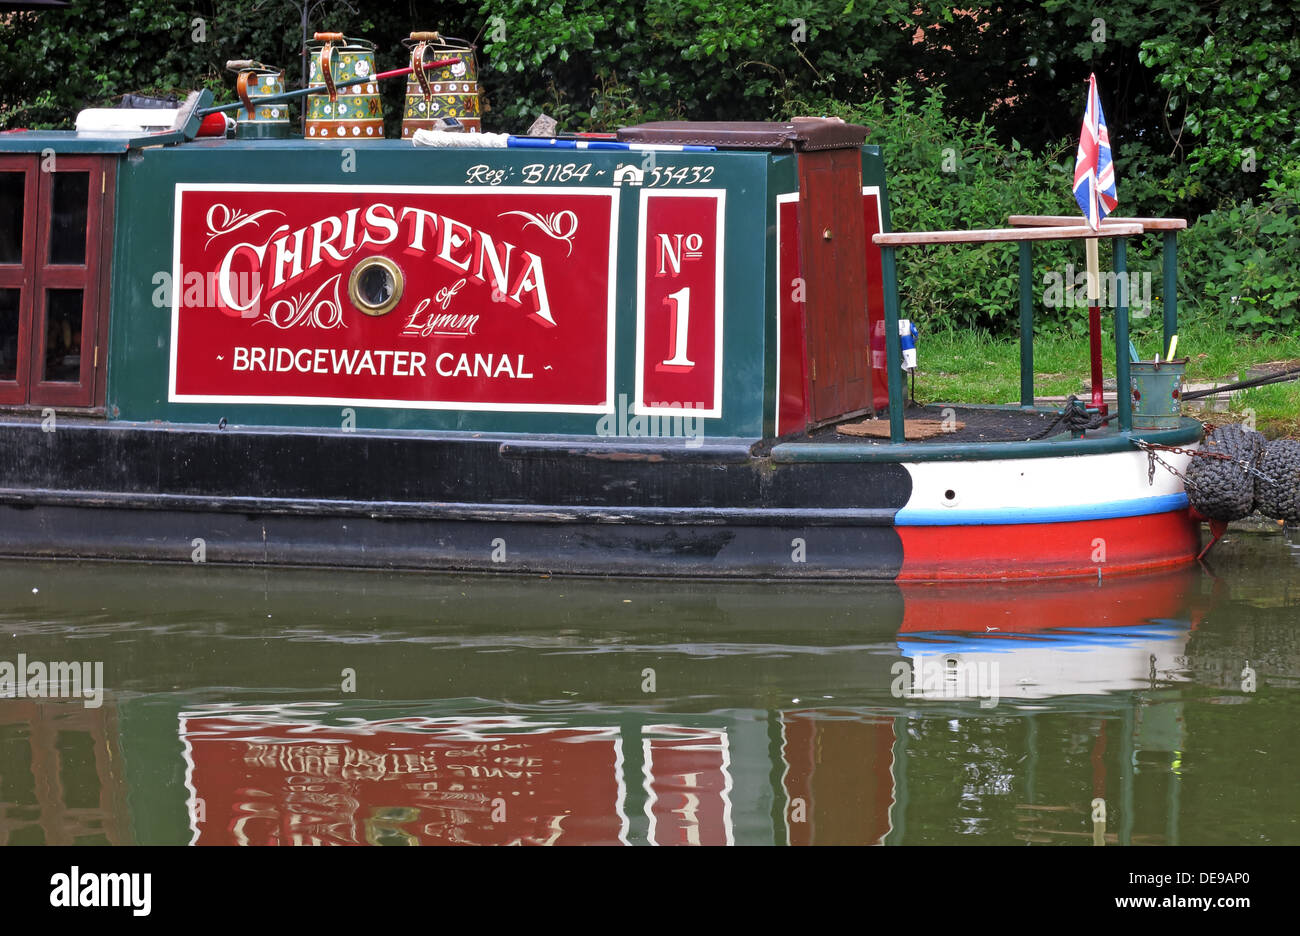 Barge du canal de Bridgewater, Christena n° 1, rouge et vert, à Grappenhall, Warrington, Cheshire, Angleterre, ROYAUME-UNI, WA4 Banque D'Images